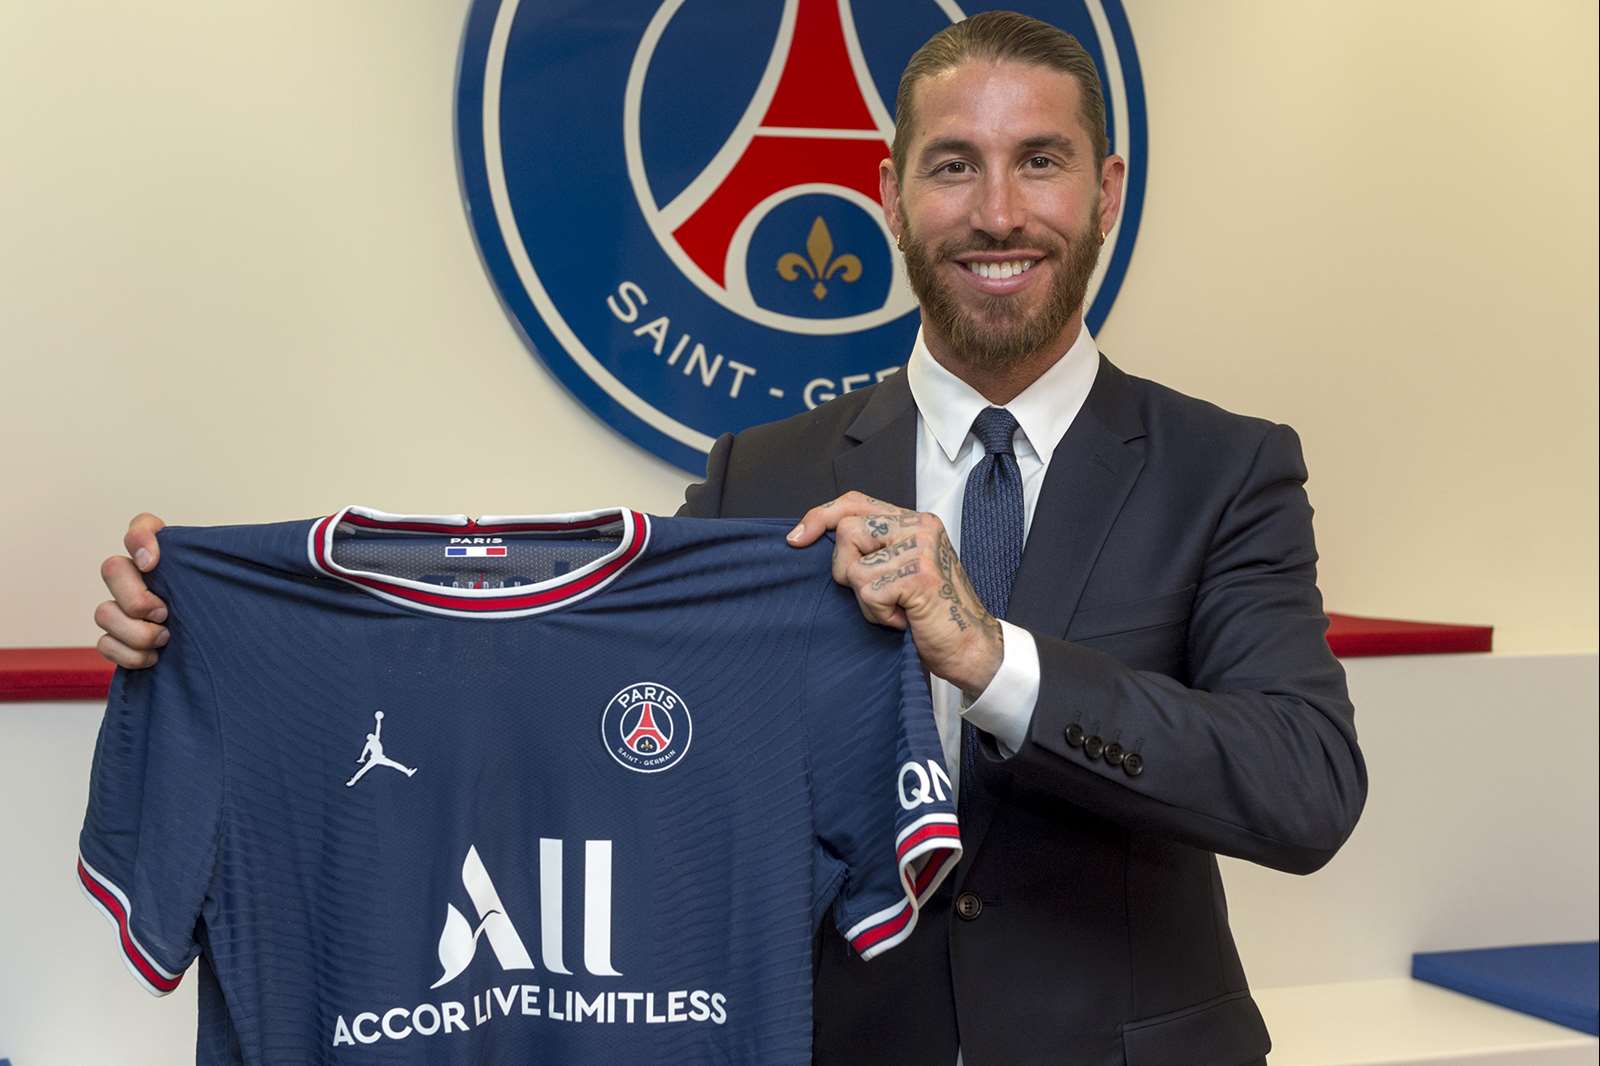 Sergio Ramos signs with Paris Saint-Germain